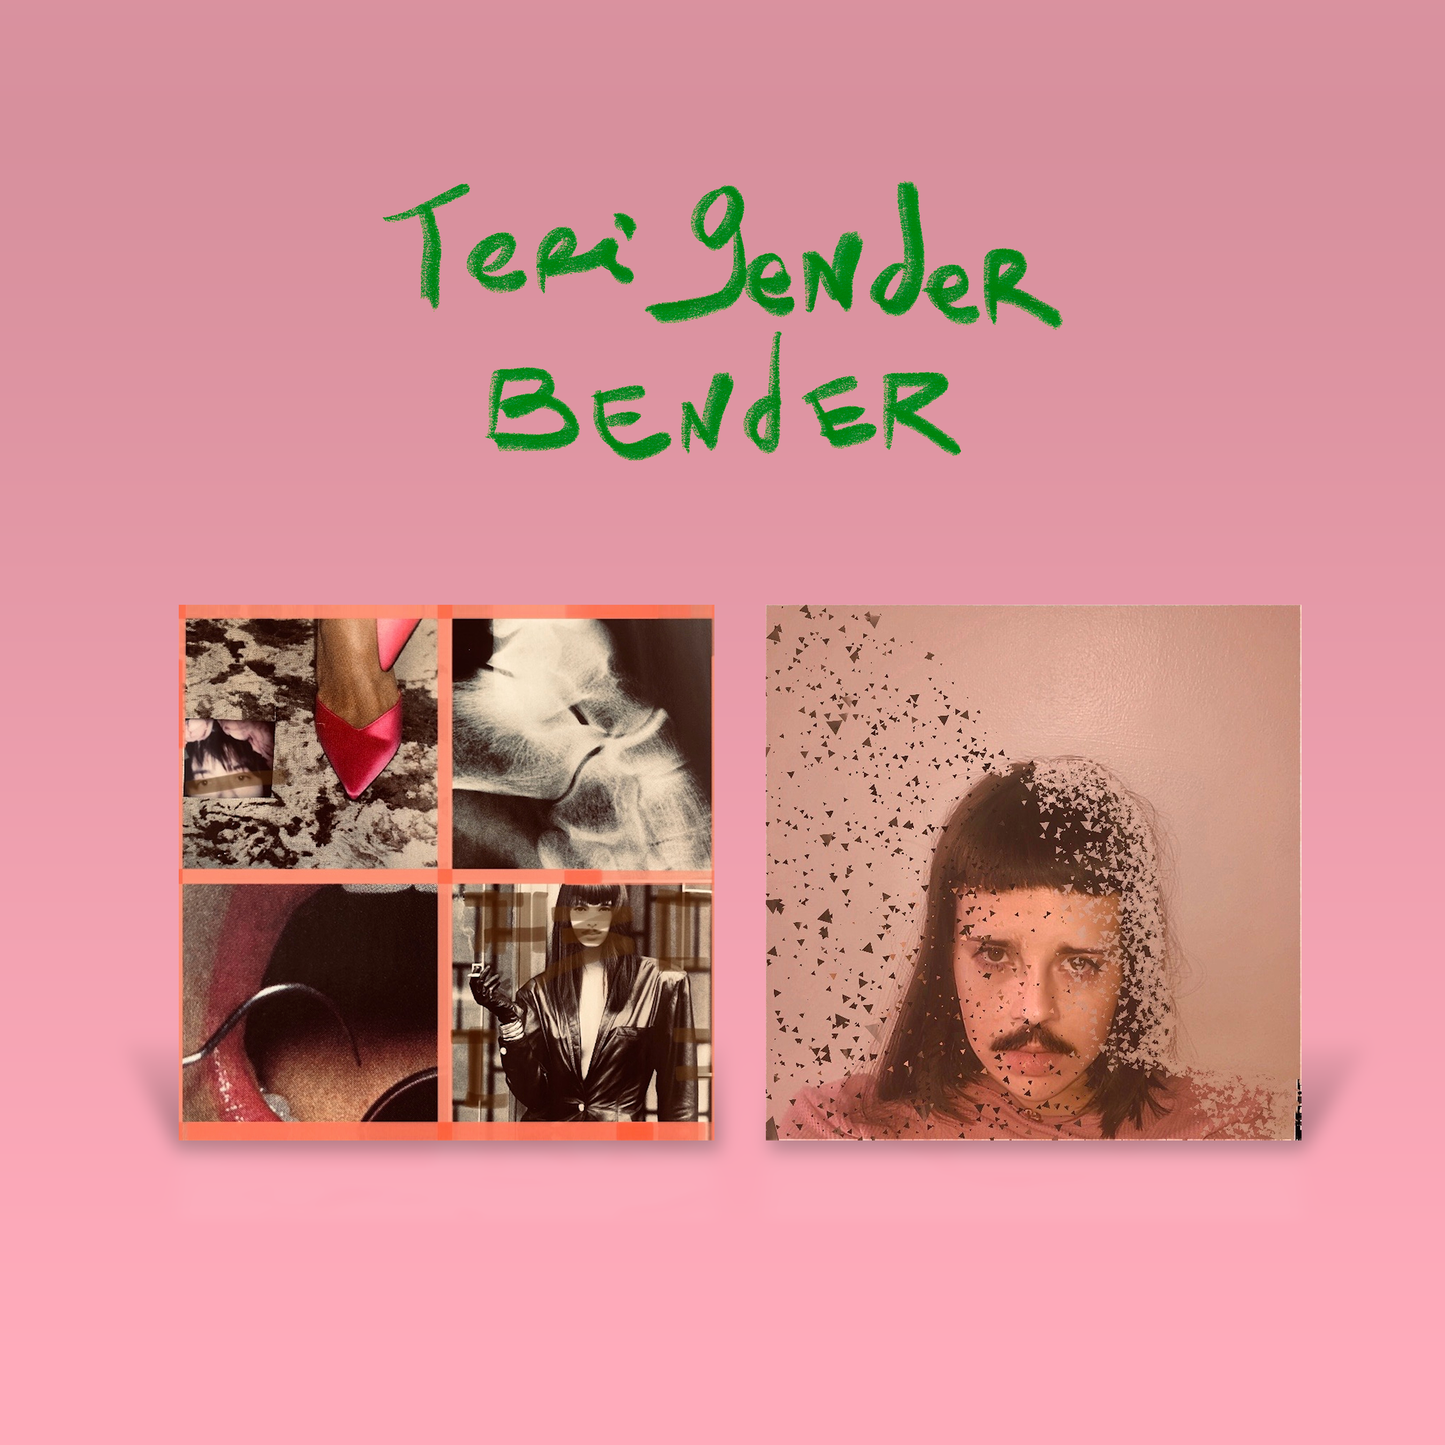 Teri Gender Bender - SATURN SEX + STATE OF FEAR